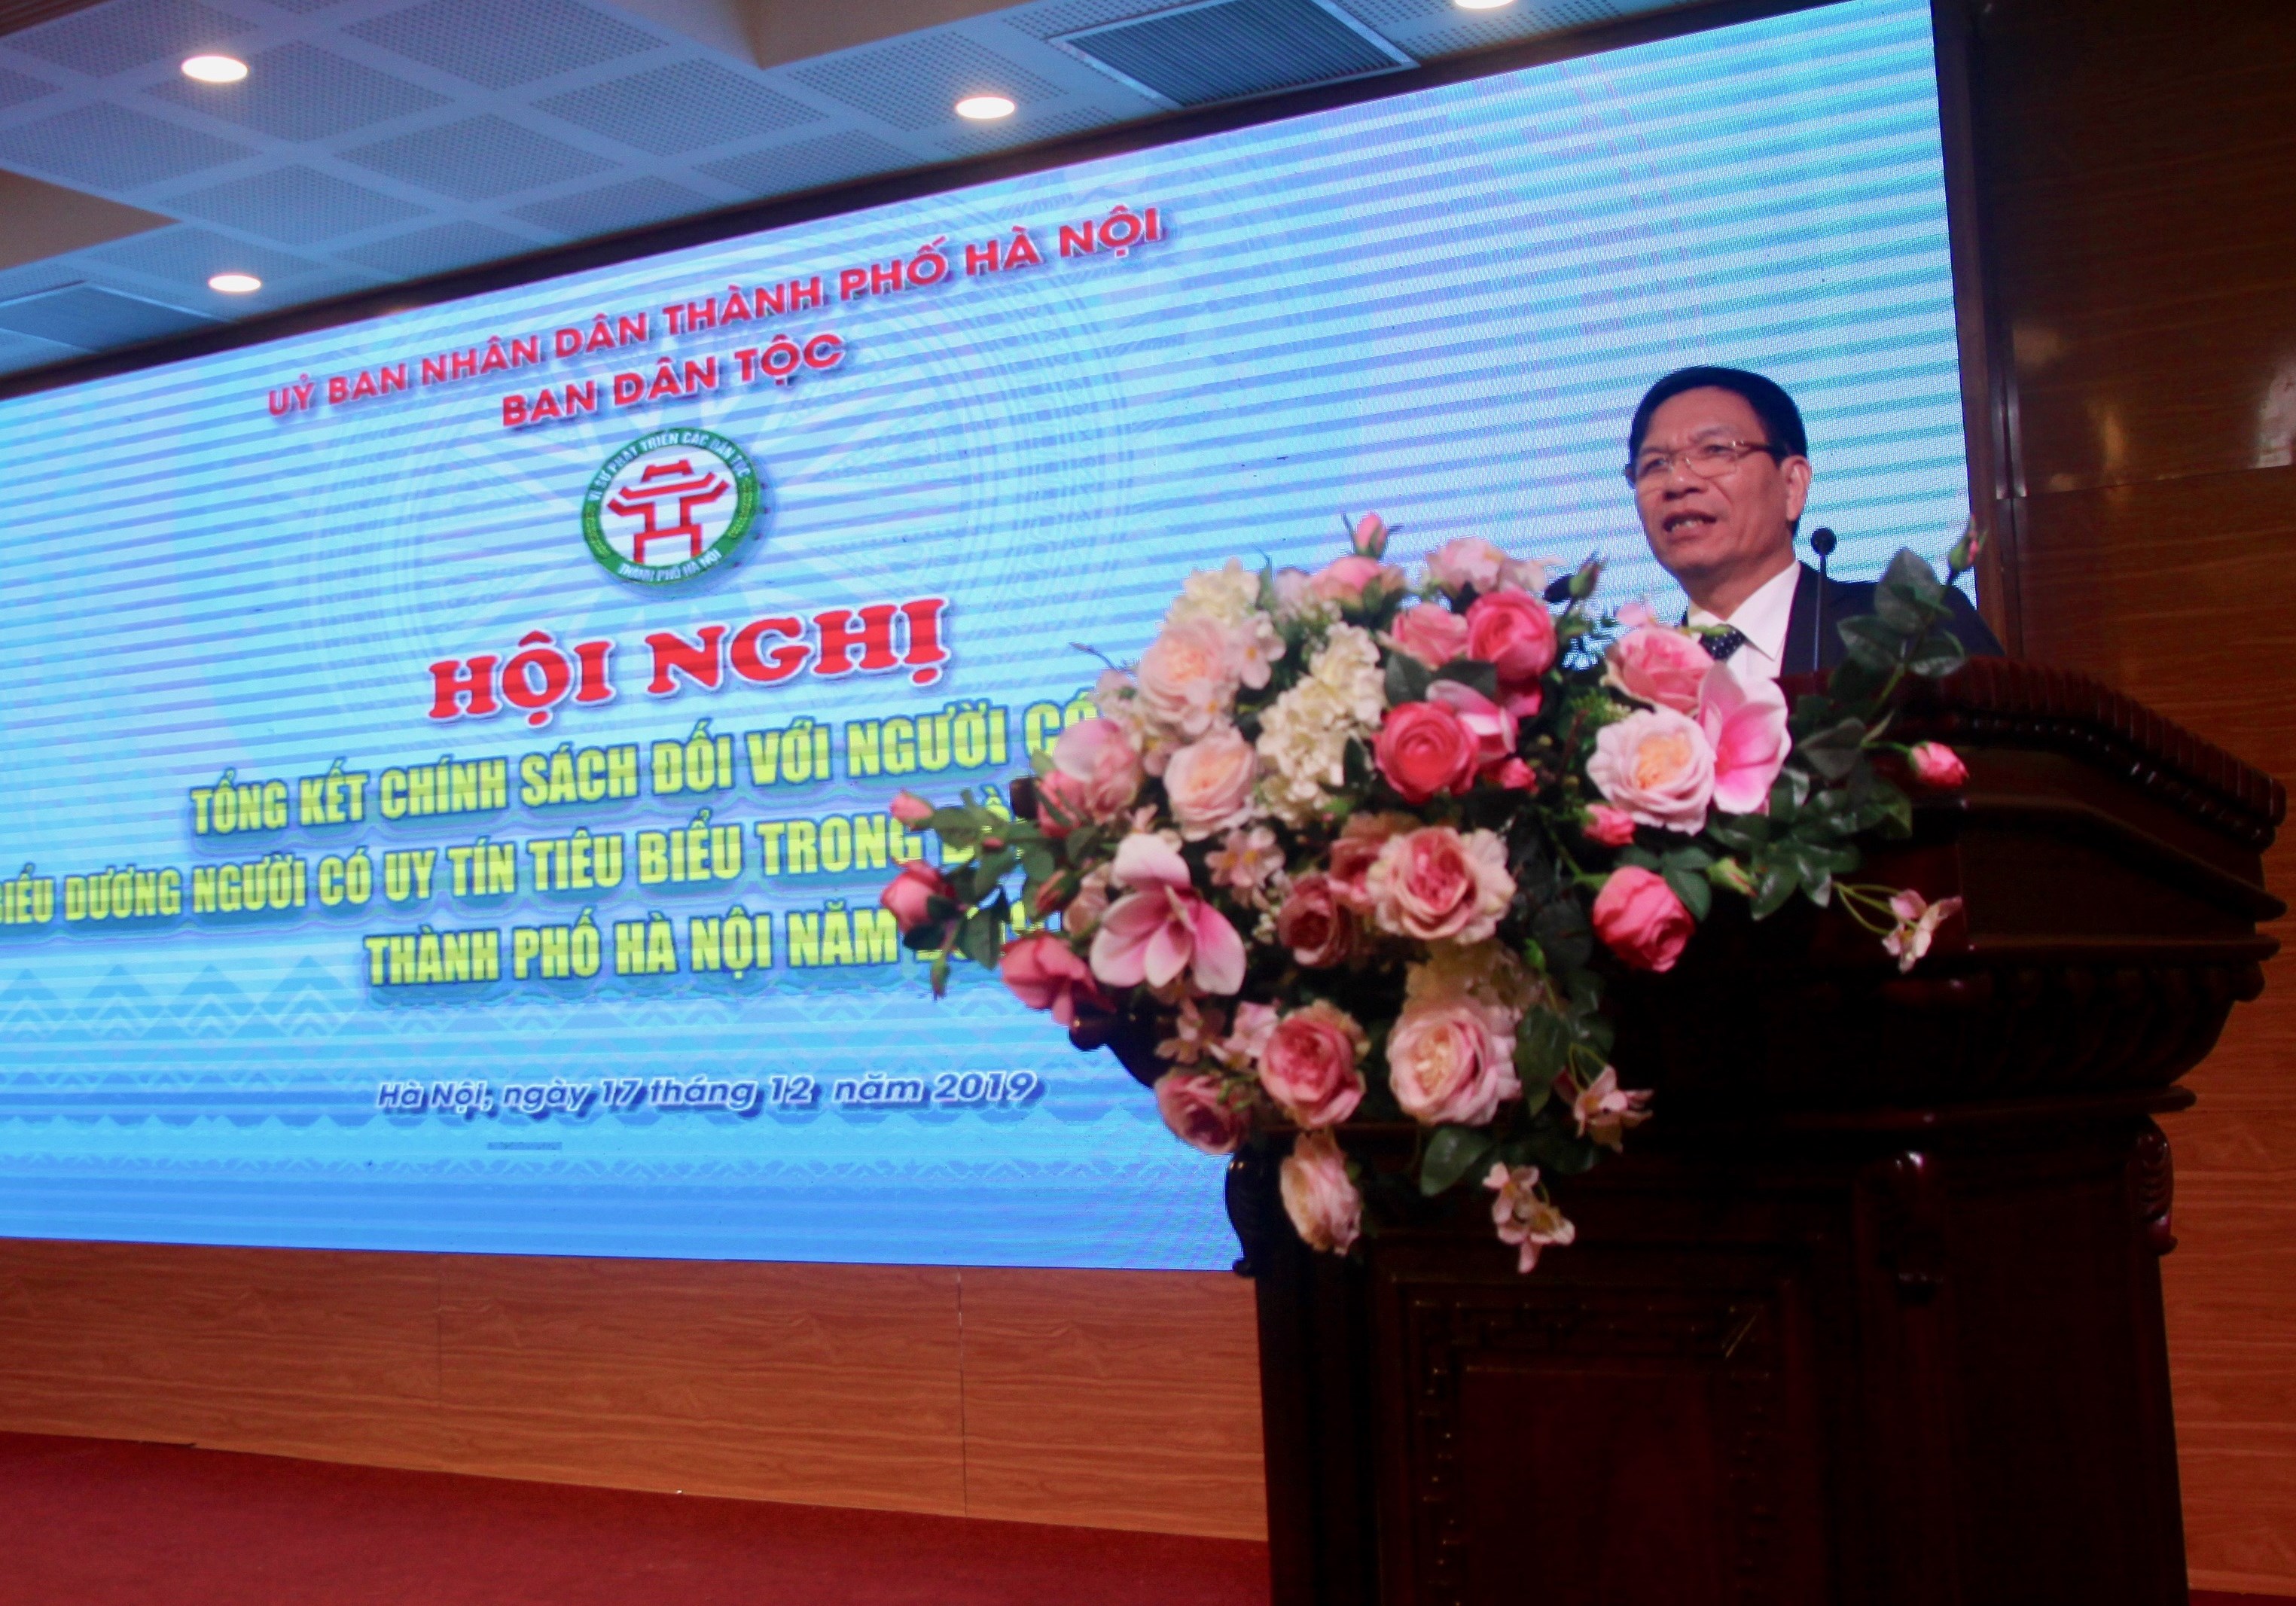 Ông Nguyễn Tất Vinh, Trưởng Ban Dân tộc thành phố Hà Nội phát biểu tại Hội nghị